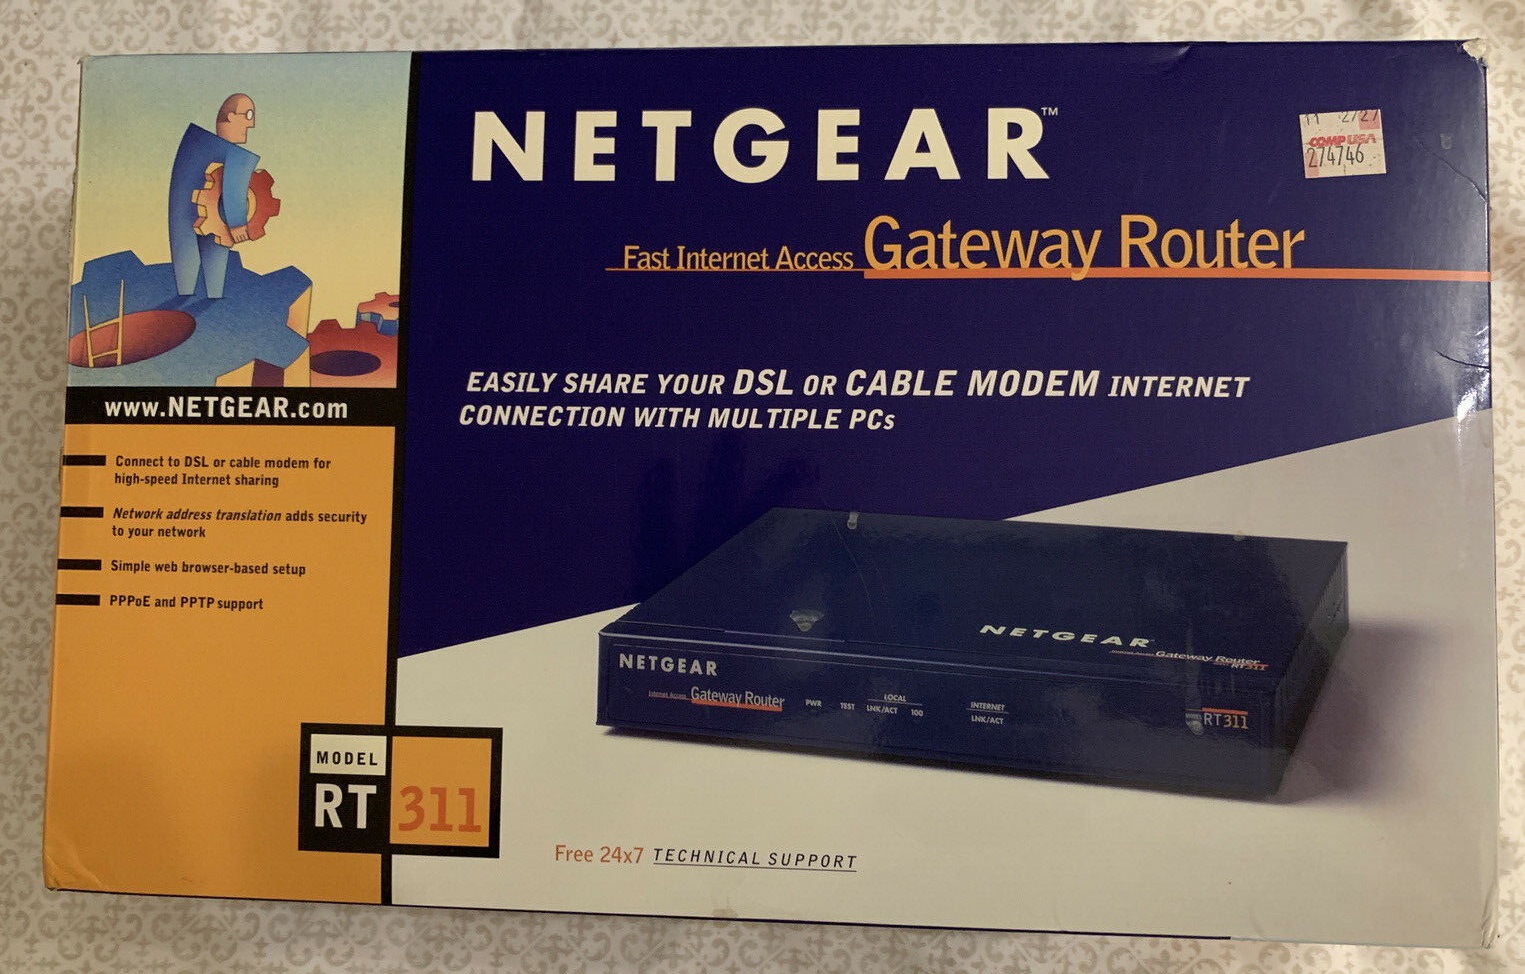 Netgear RT311 Gateway Router